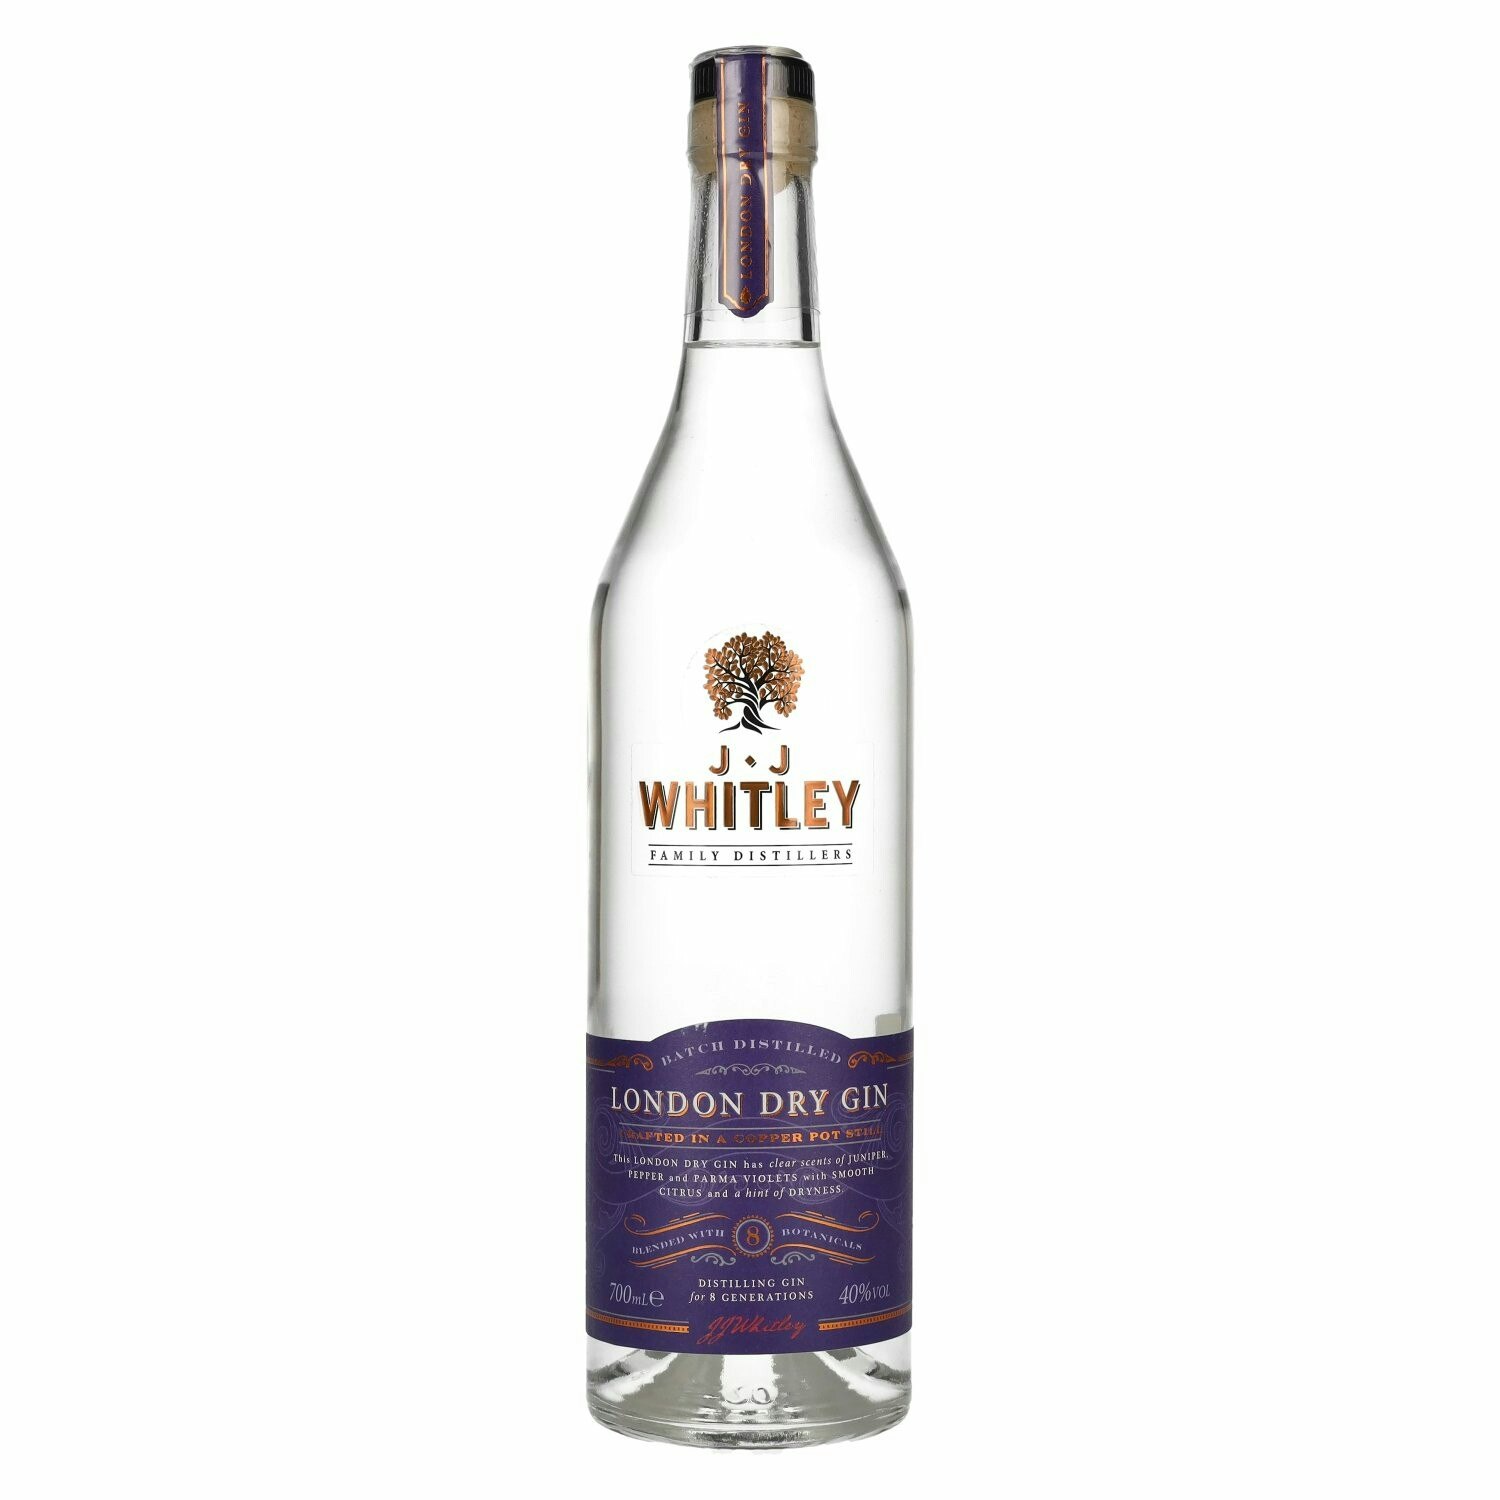 J.J Whitley London Dry Gin 40% Vol. 0,7l